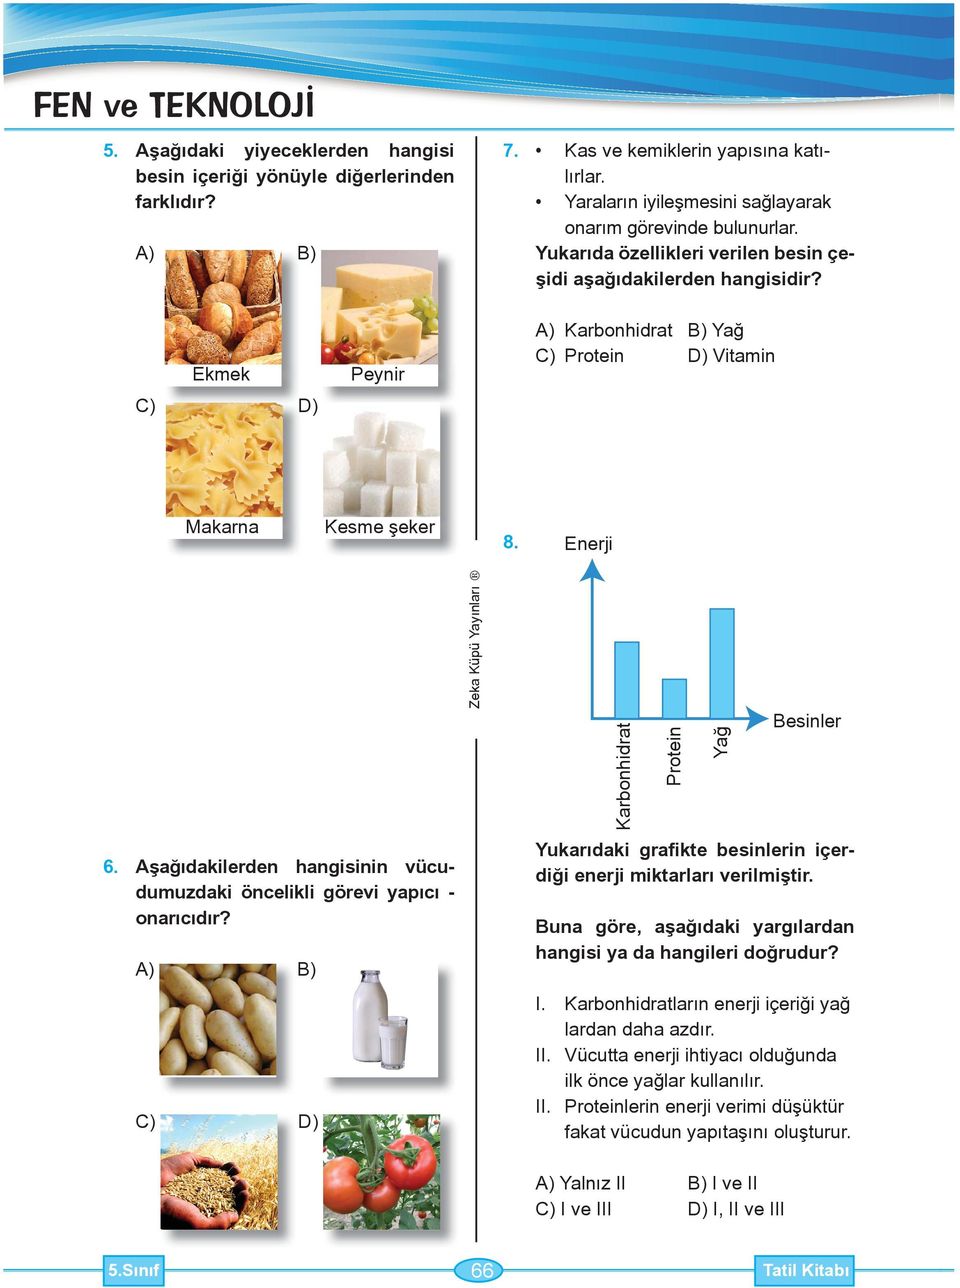 Yukarıda özellikleri verilen besin çeşidi aşağıdakilerden C) Ekmek D) Peynir A) Karbonhidrat B) Yağ C) Protein D) Vitamin Makarna Kesme şeker 8. Enerji 6.